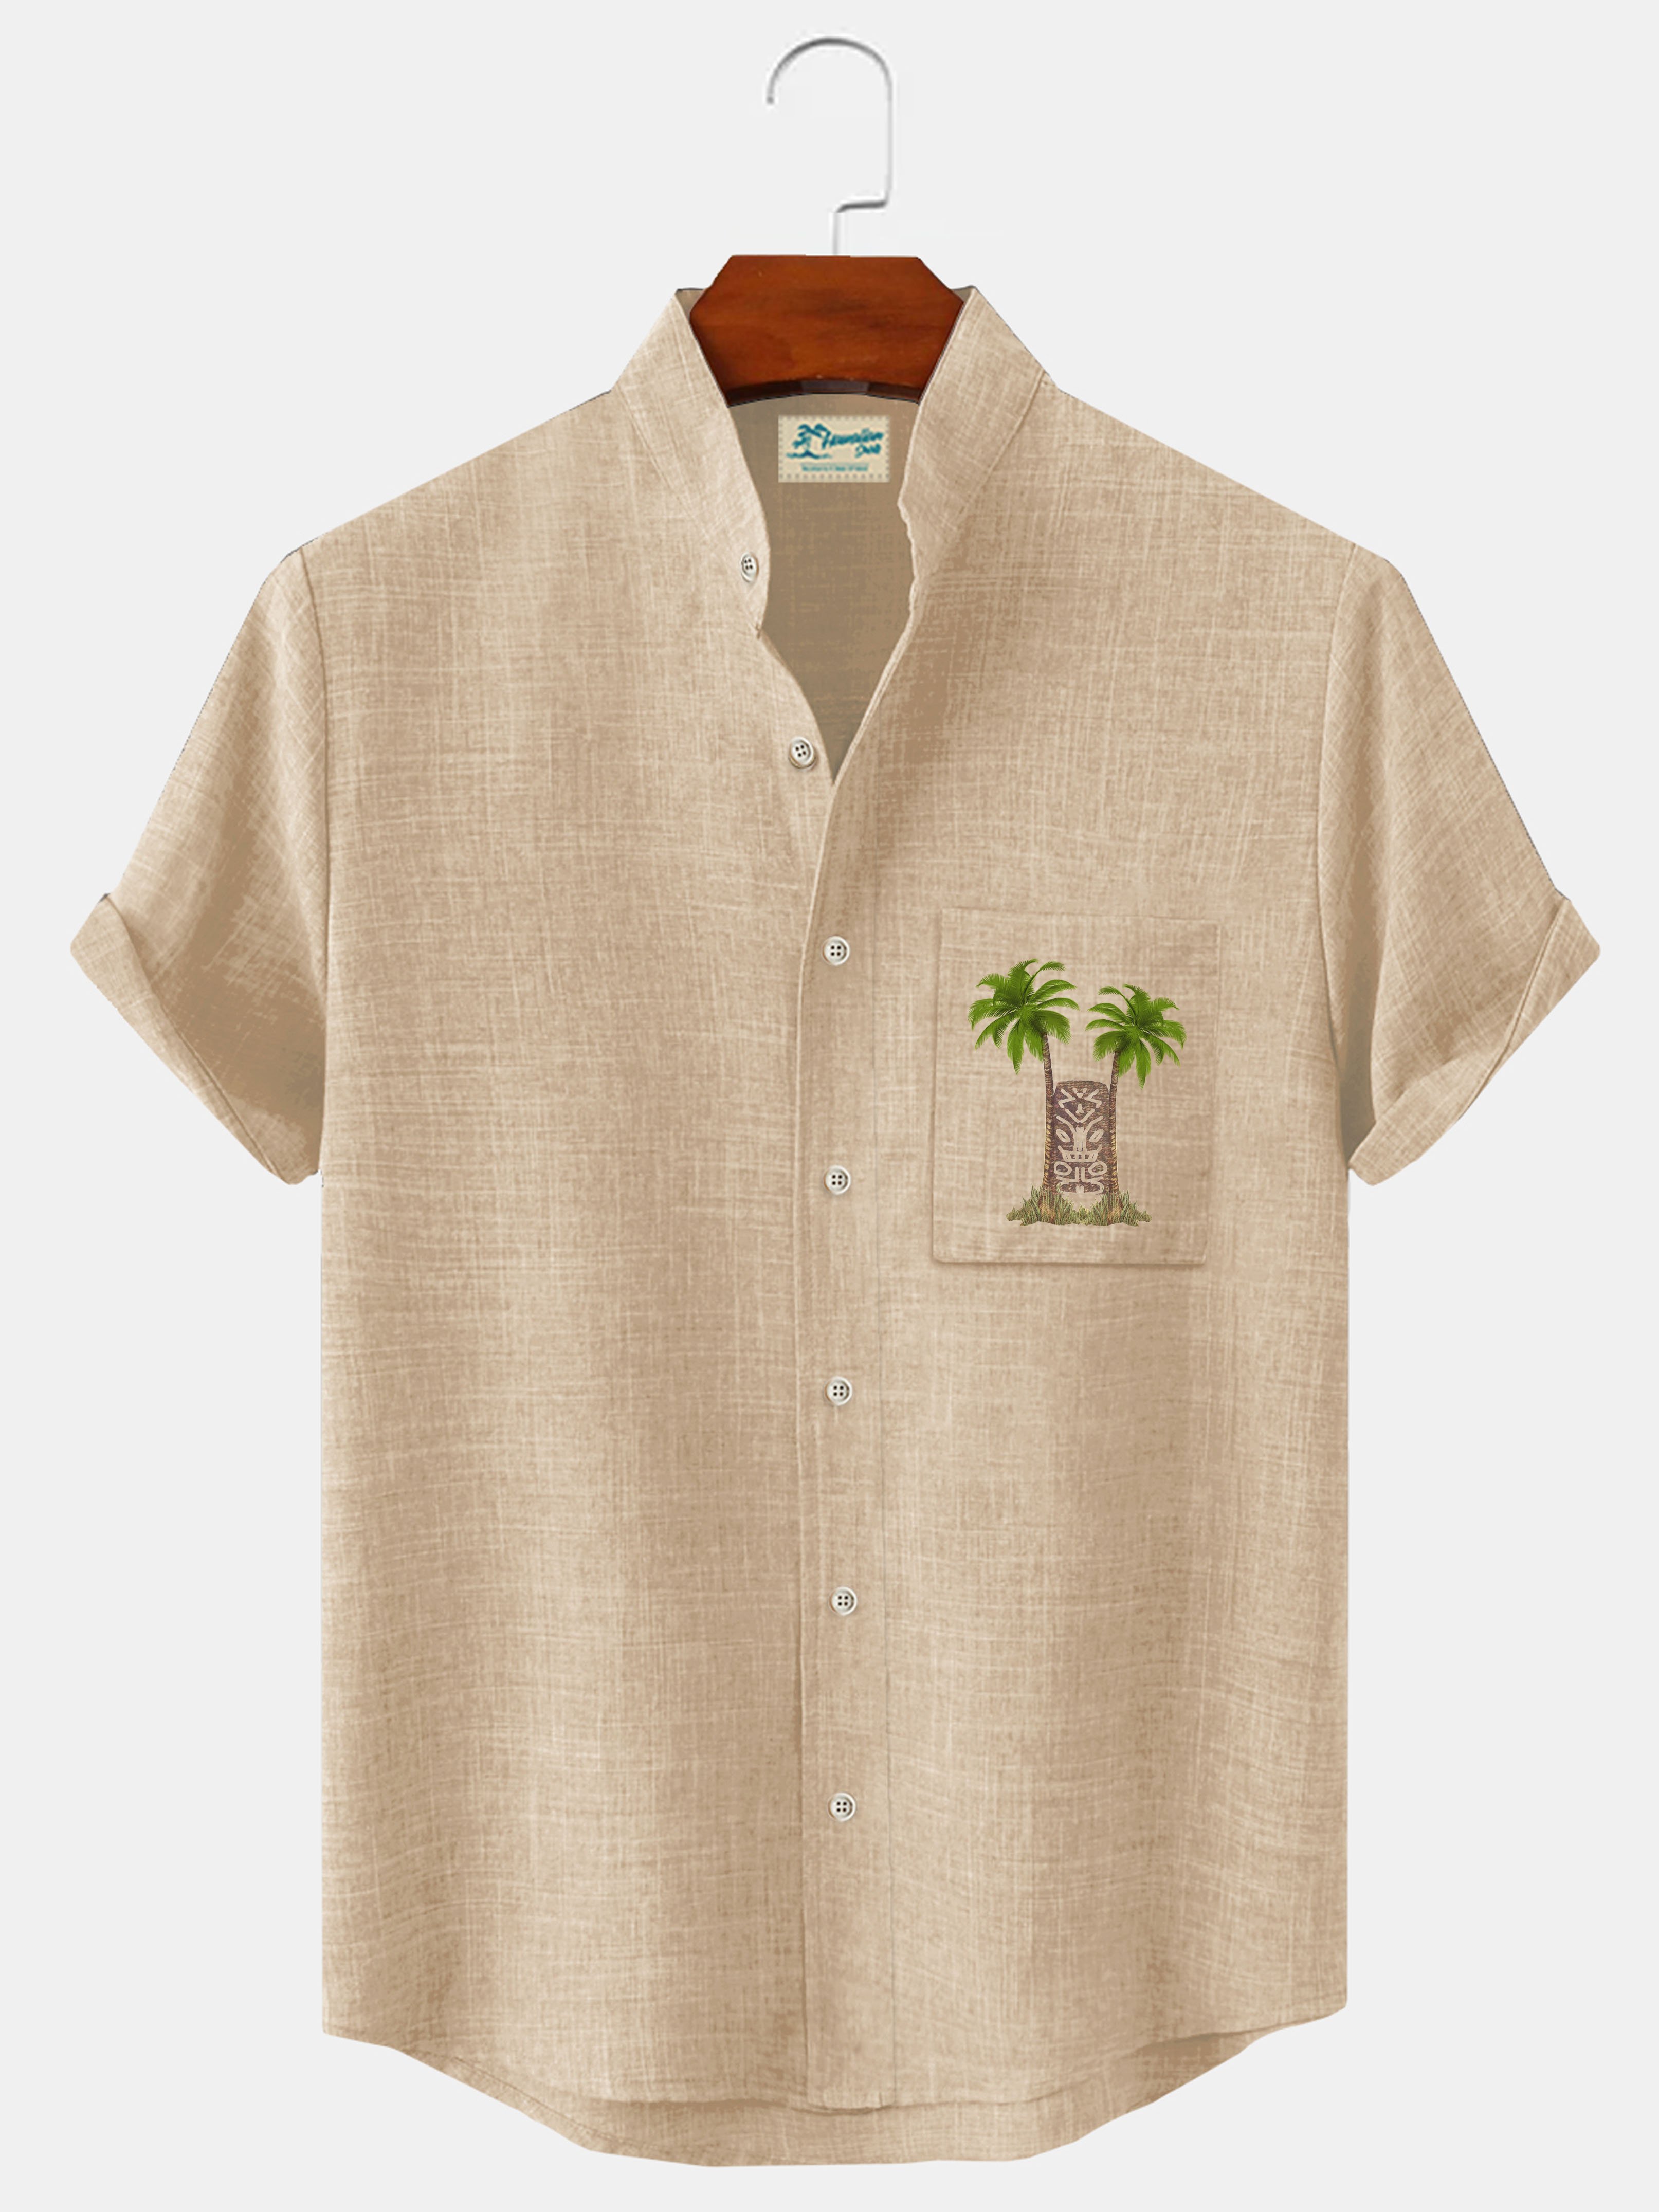 Royaura Coconut Tree Plant Print Beach Men's Hawaiian Oversized Shirt with Pockets